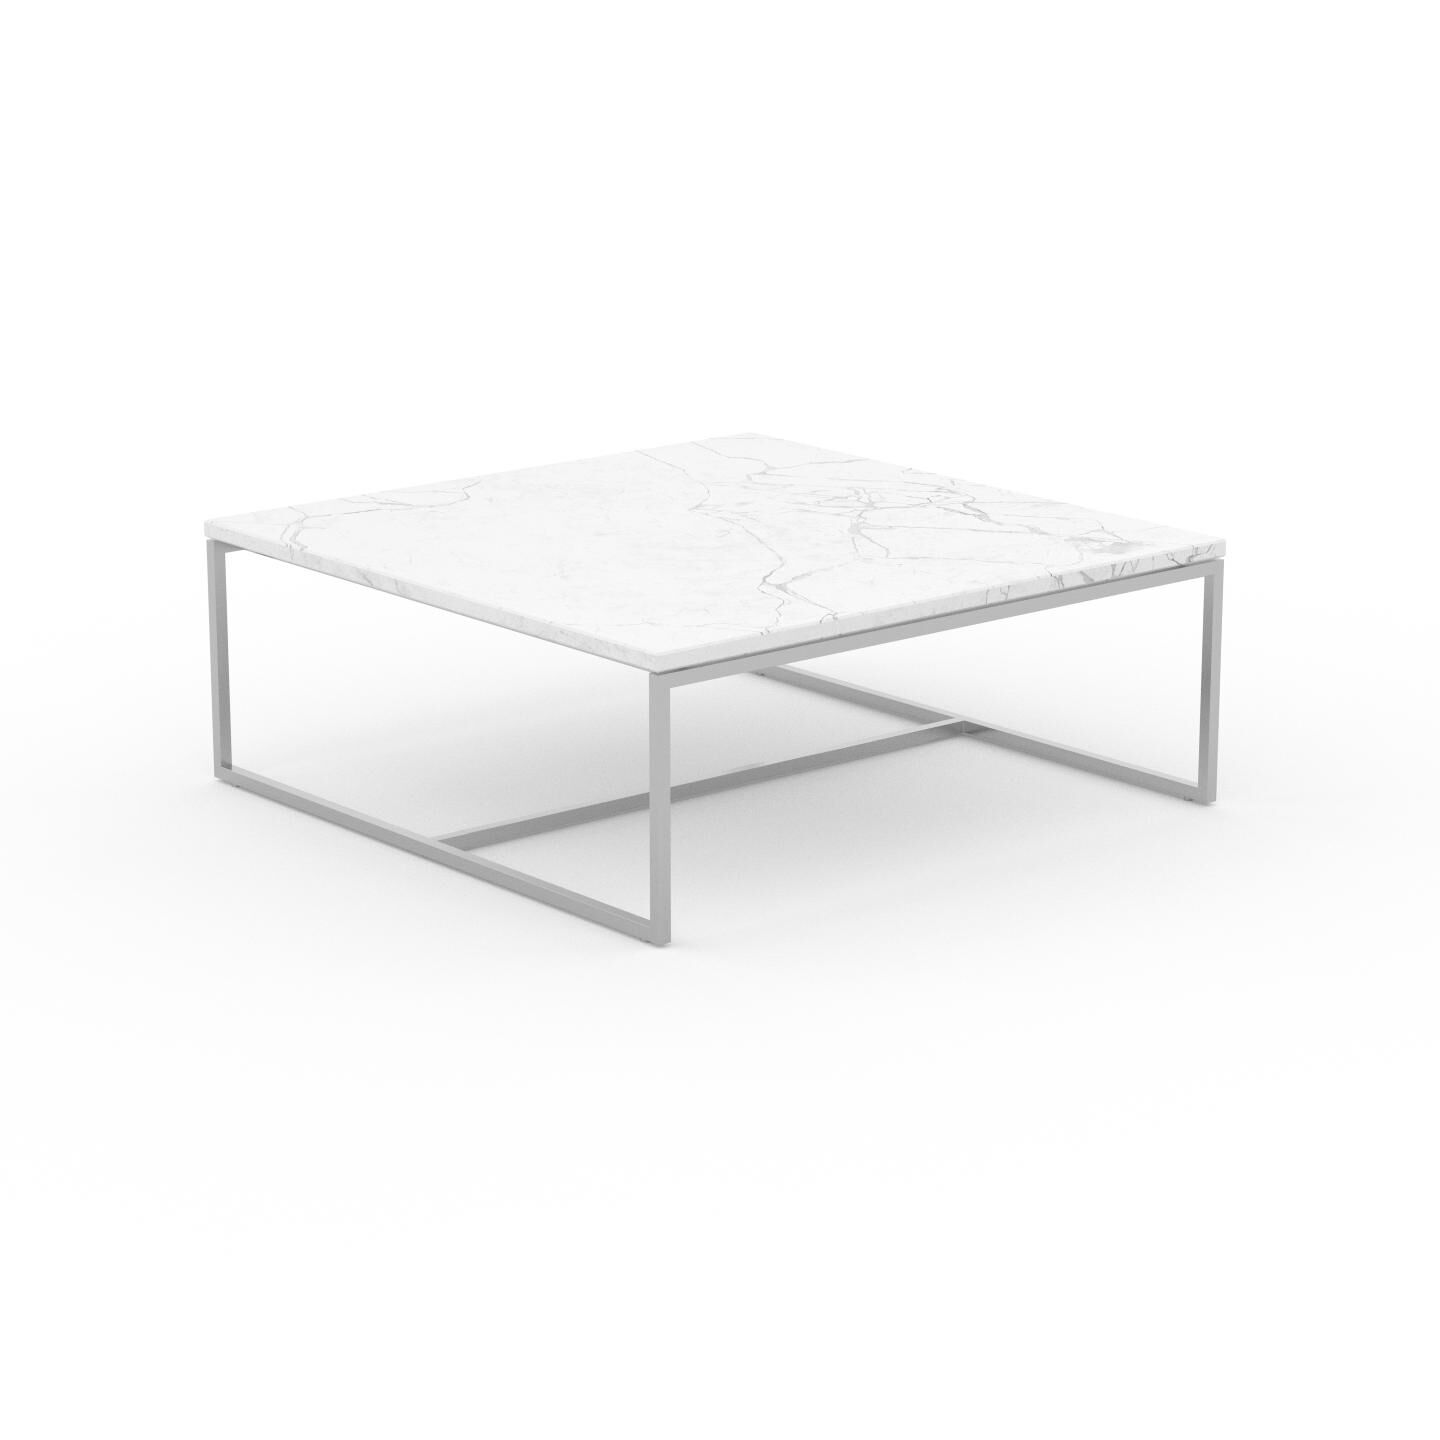 MYCS Couchtisch Marmor, Weißer Carrara - Eleganter Sofatisch: Beste Qualität, einzigartiges Design - 81 x 31 x 81 cm, Konfigurator